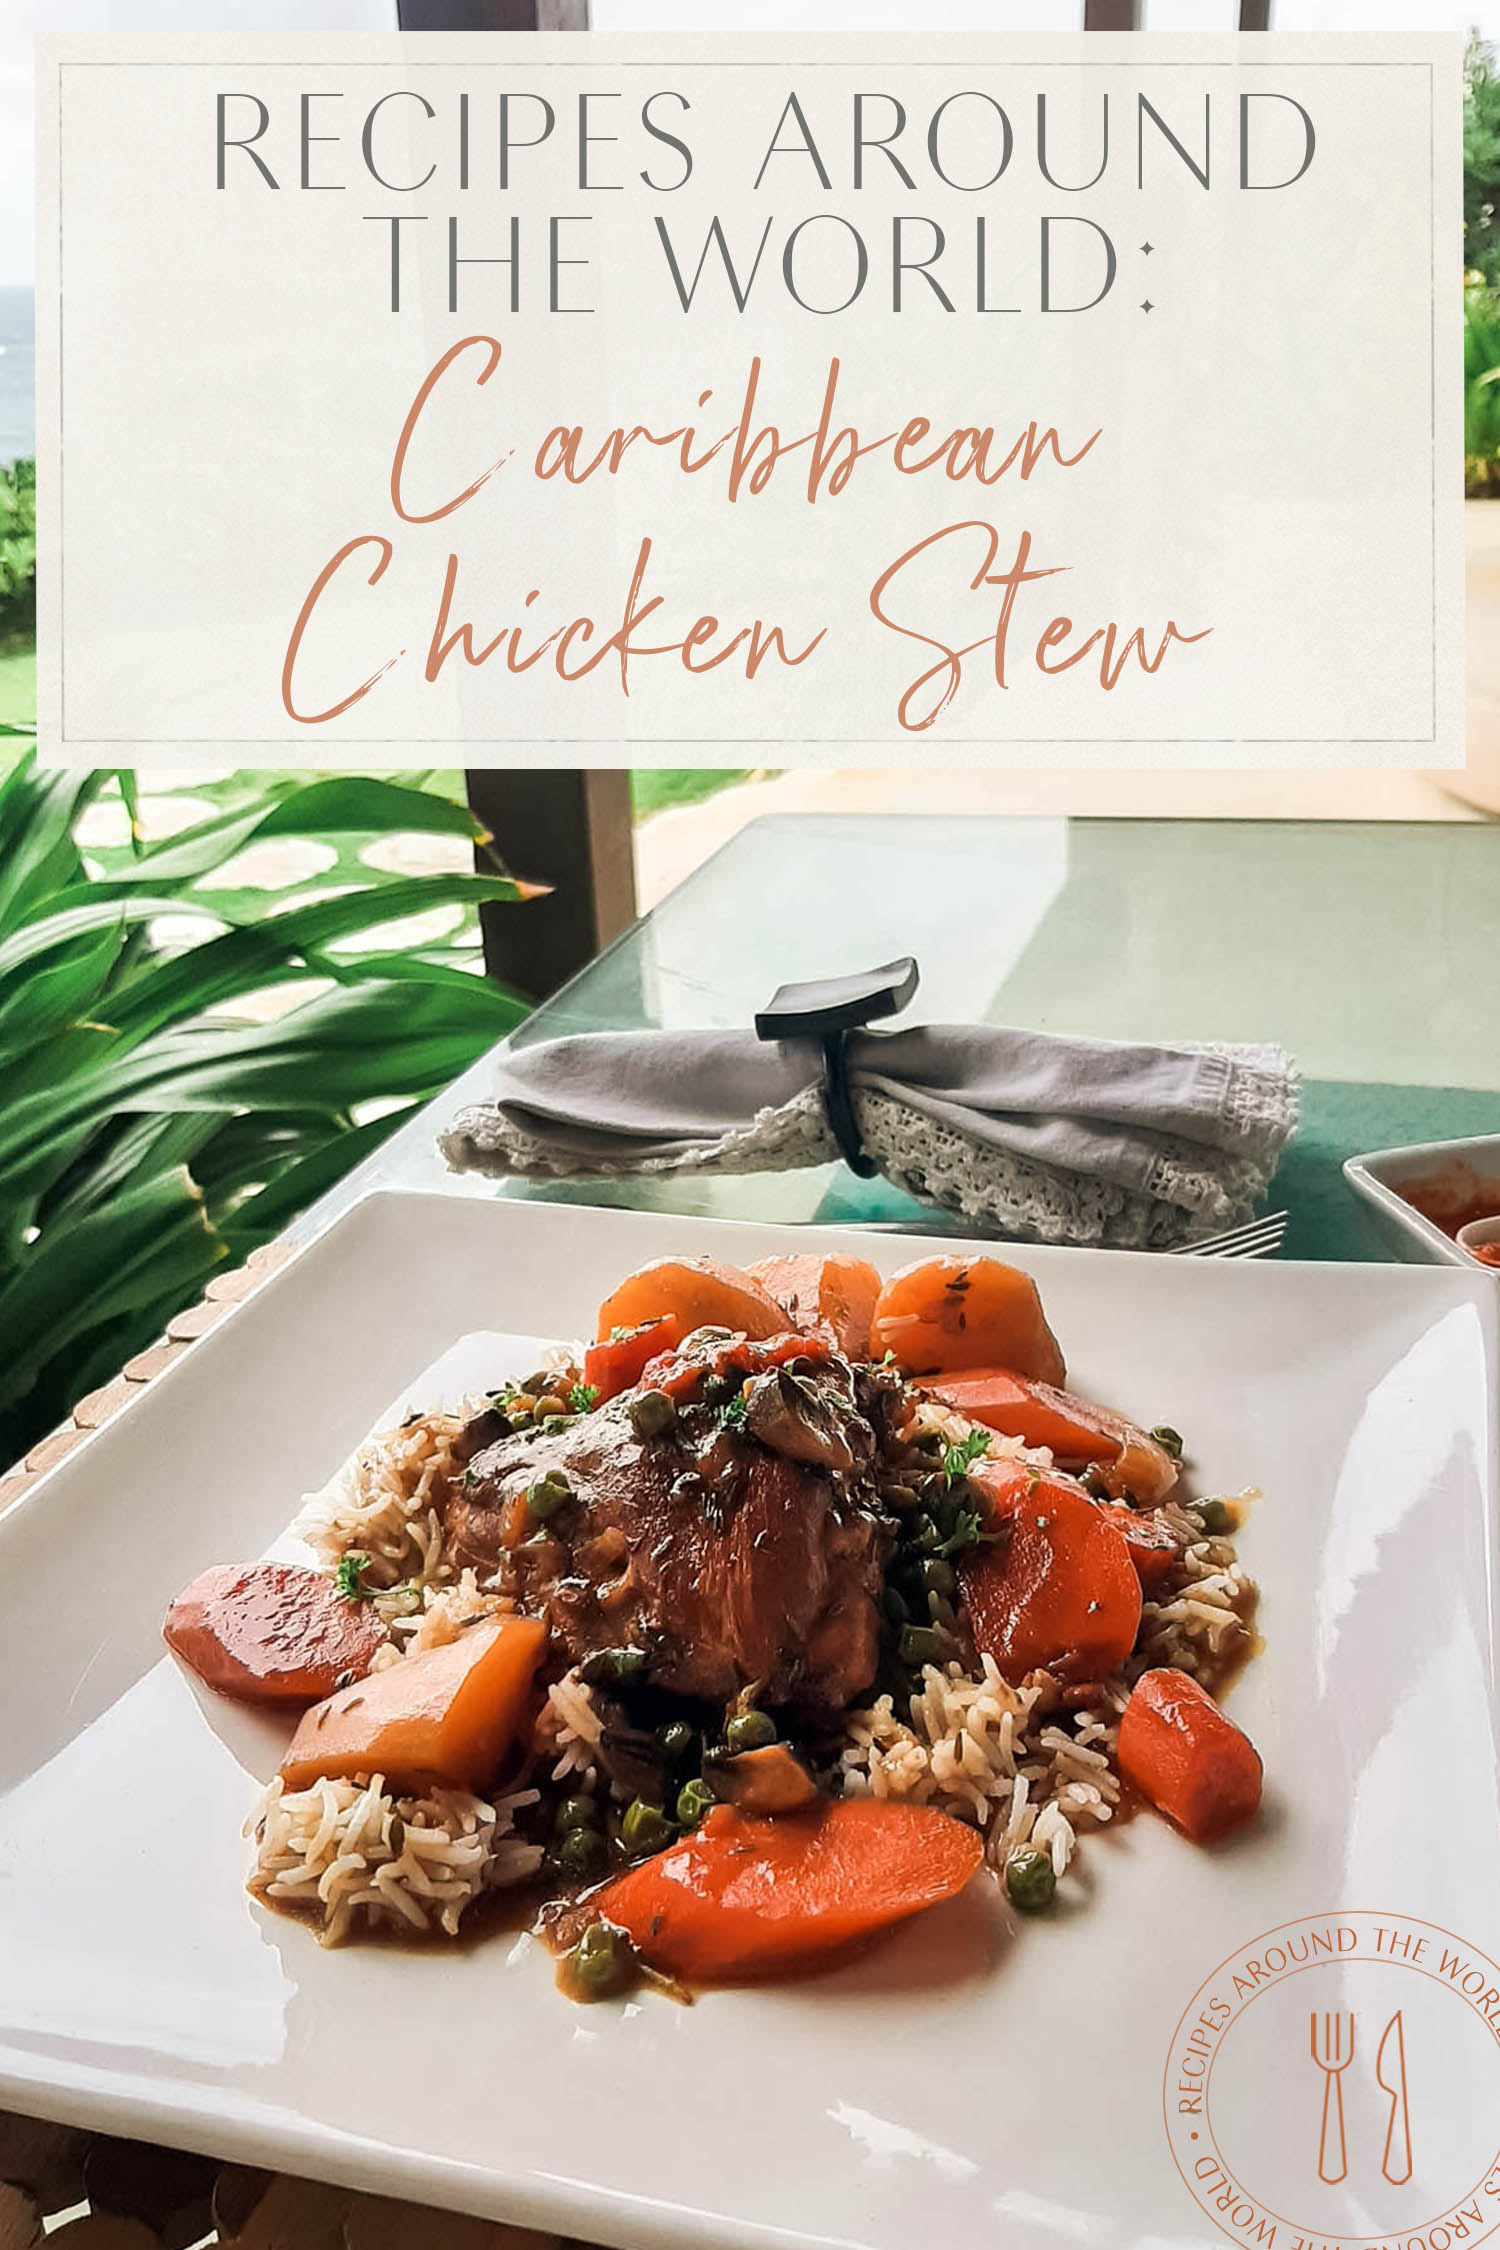 Carribean Chicken Stew